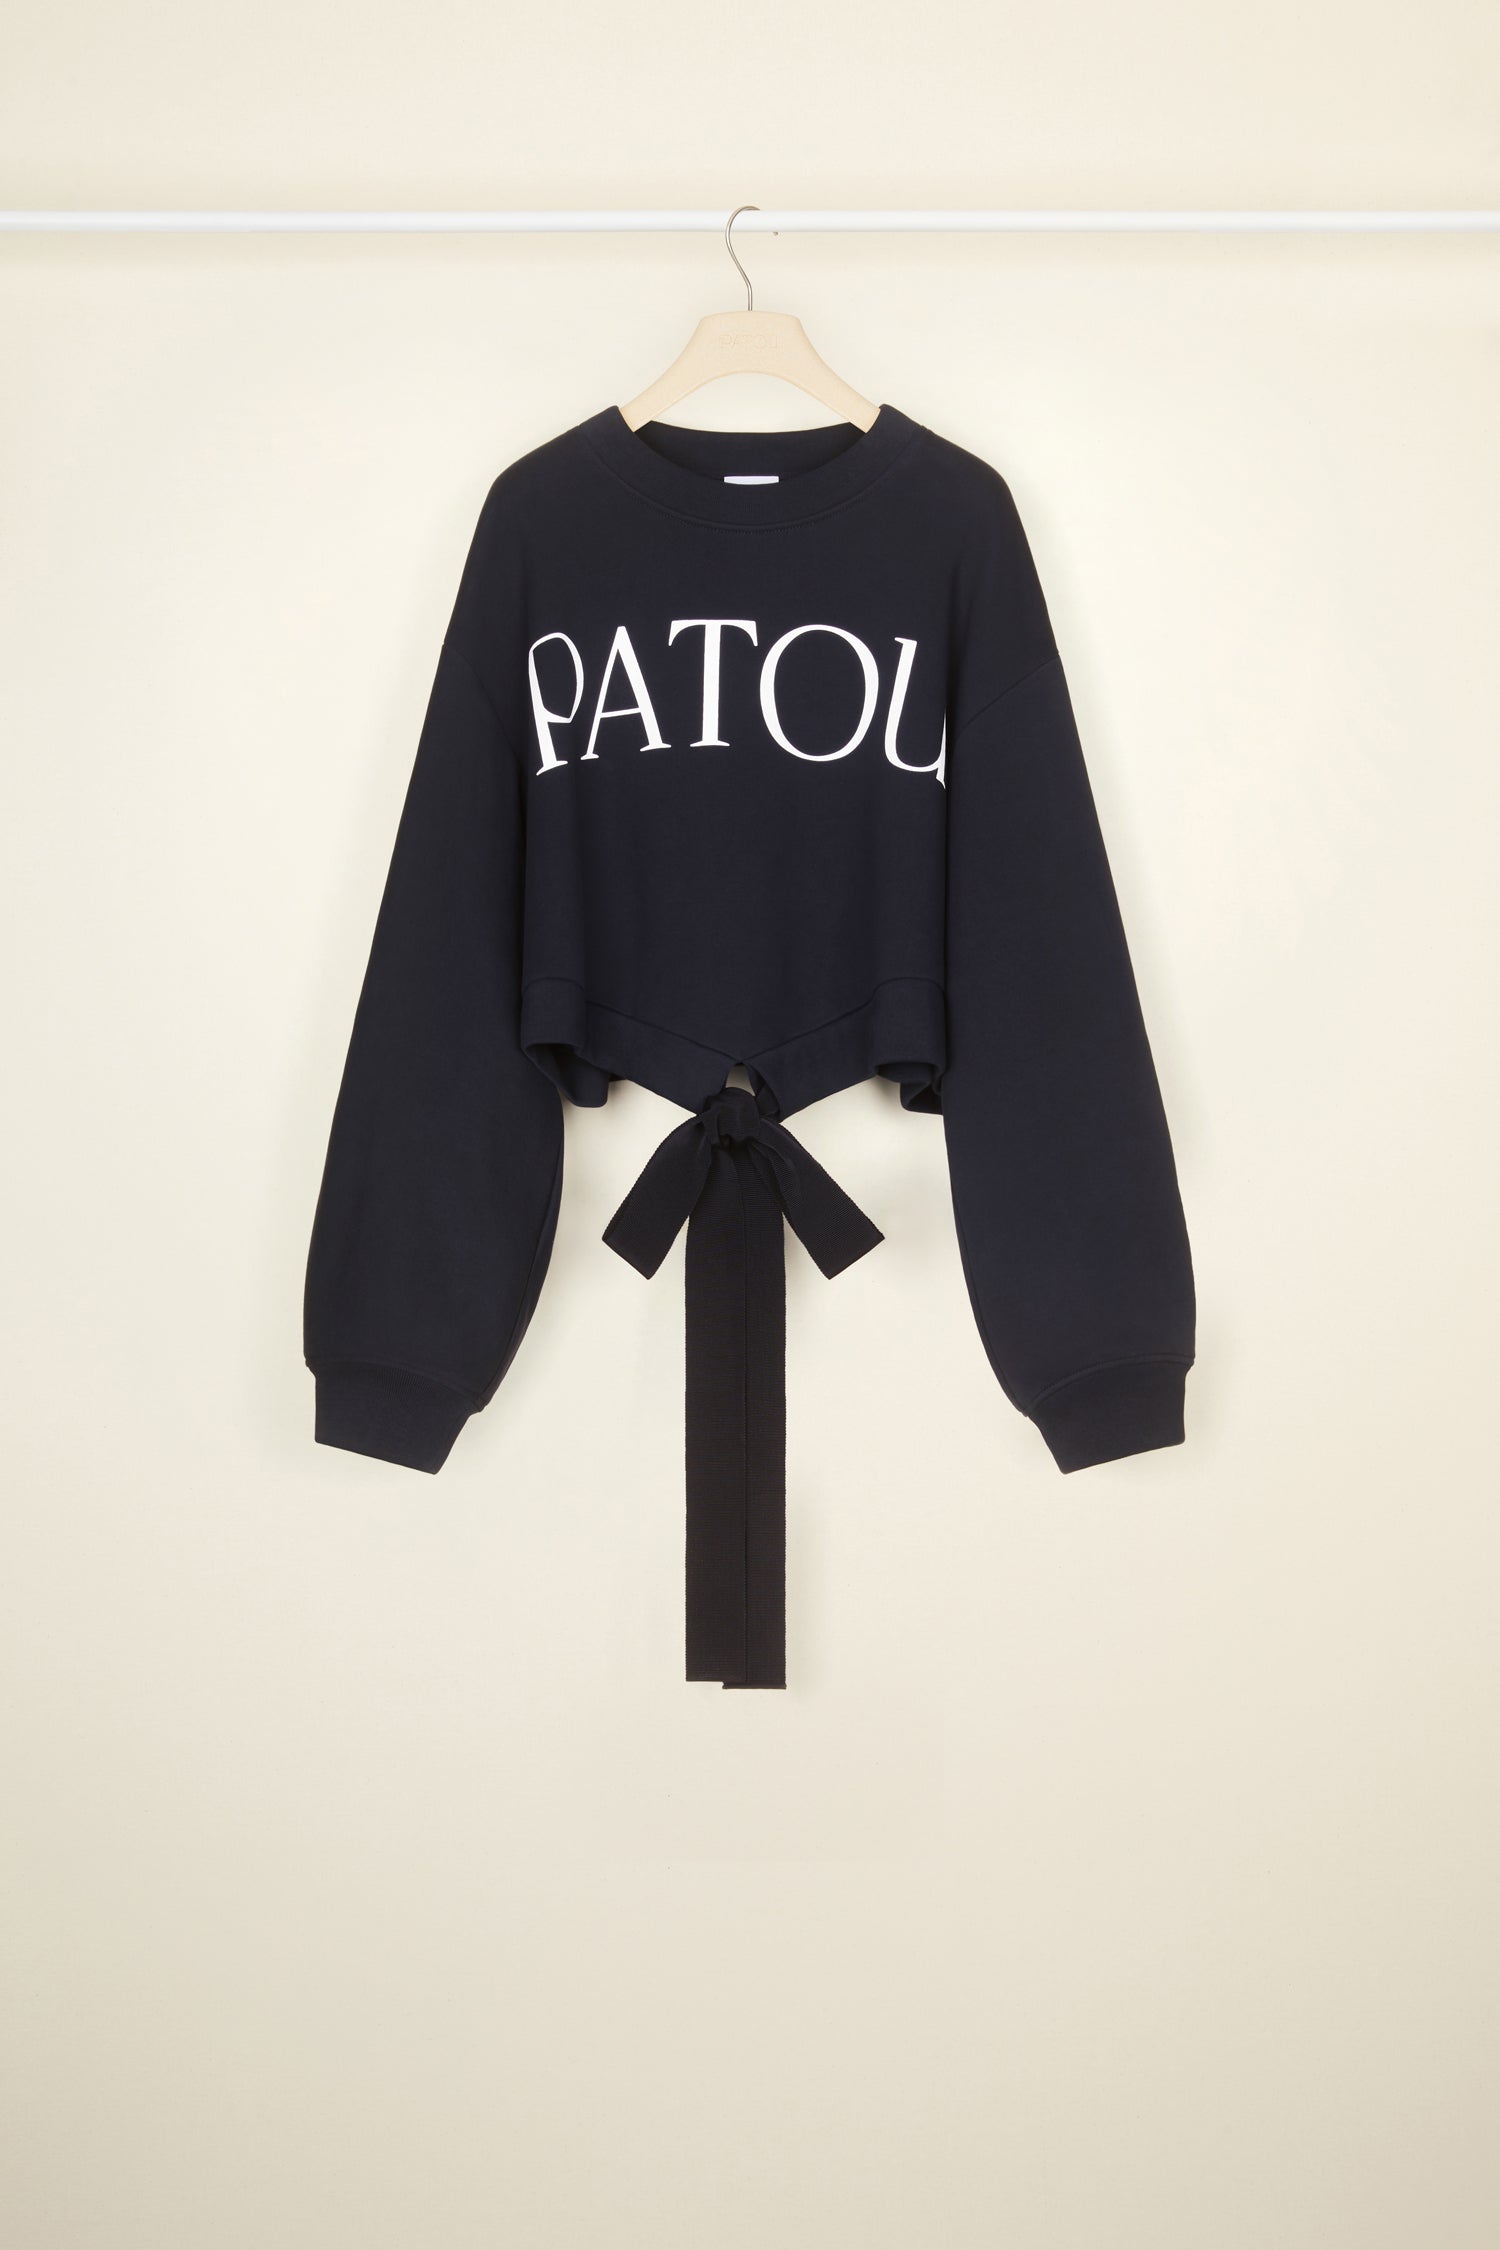 Patou | オーガニックコットン クロップド グログラン スウェットシャツ